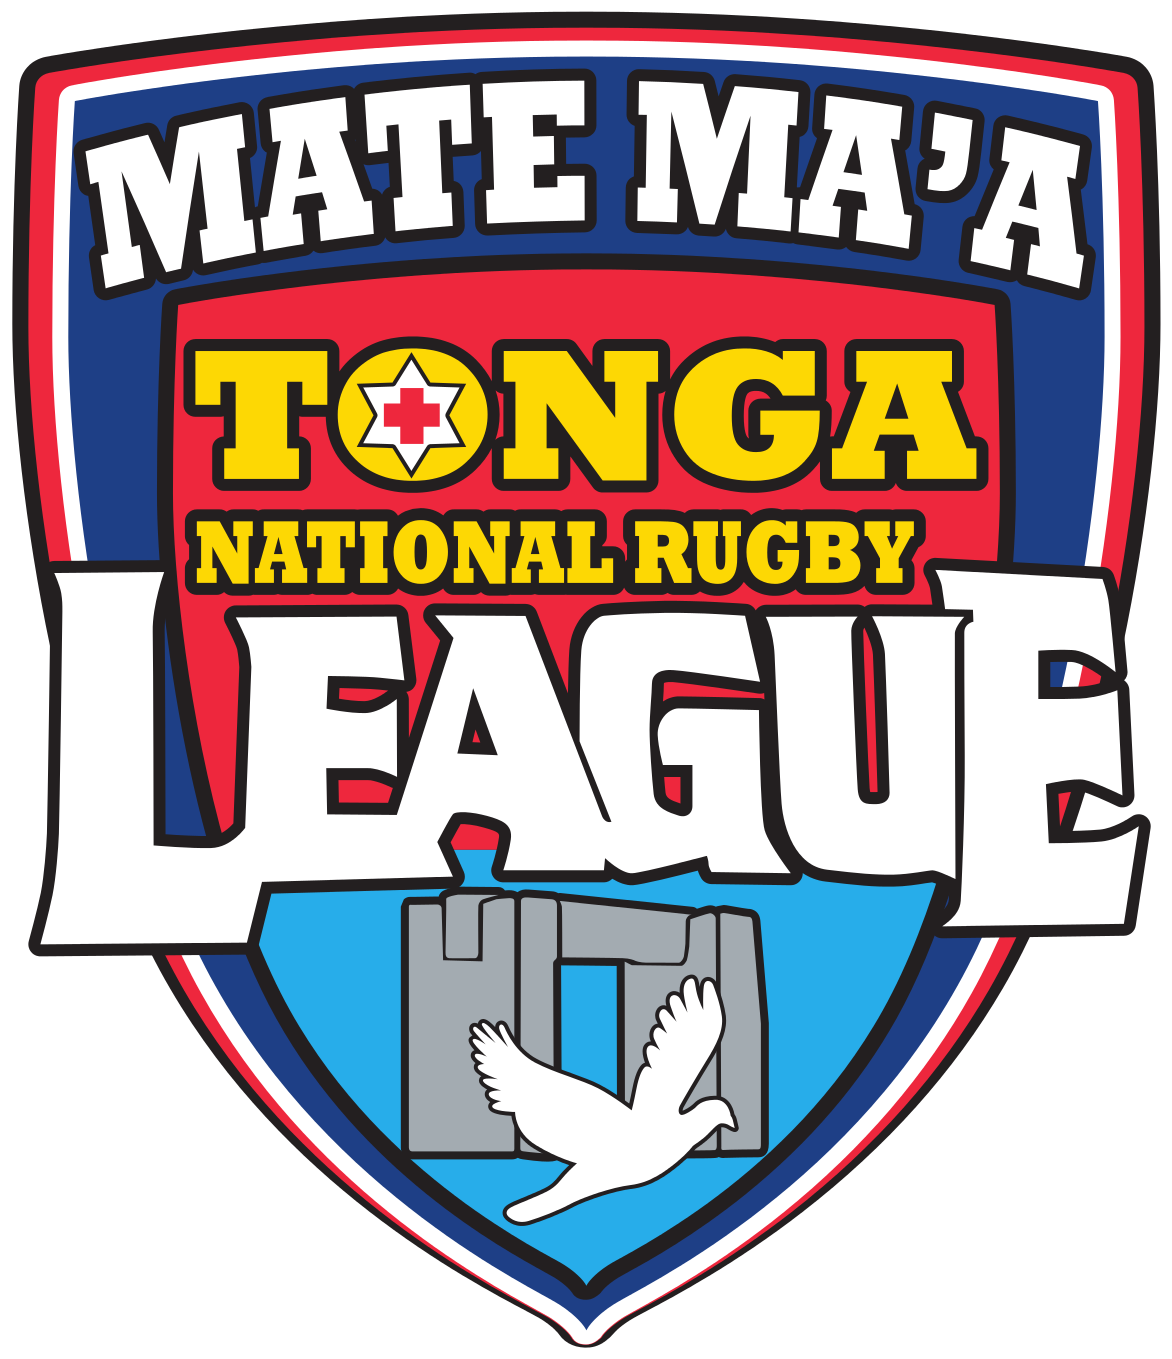 Mate Maa Tonga Logo (1200x1384)